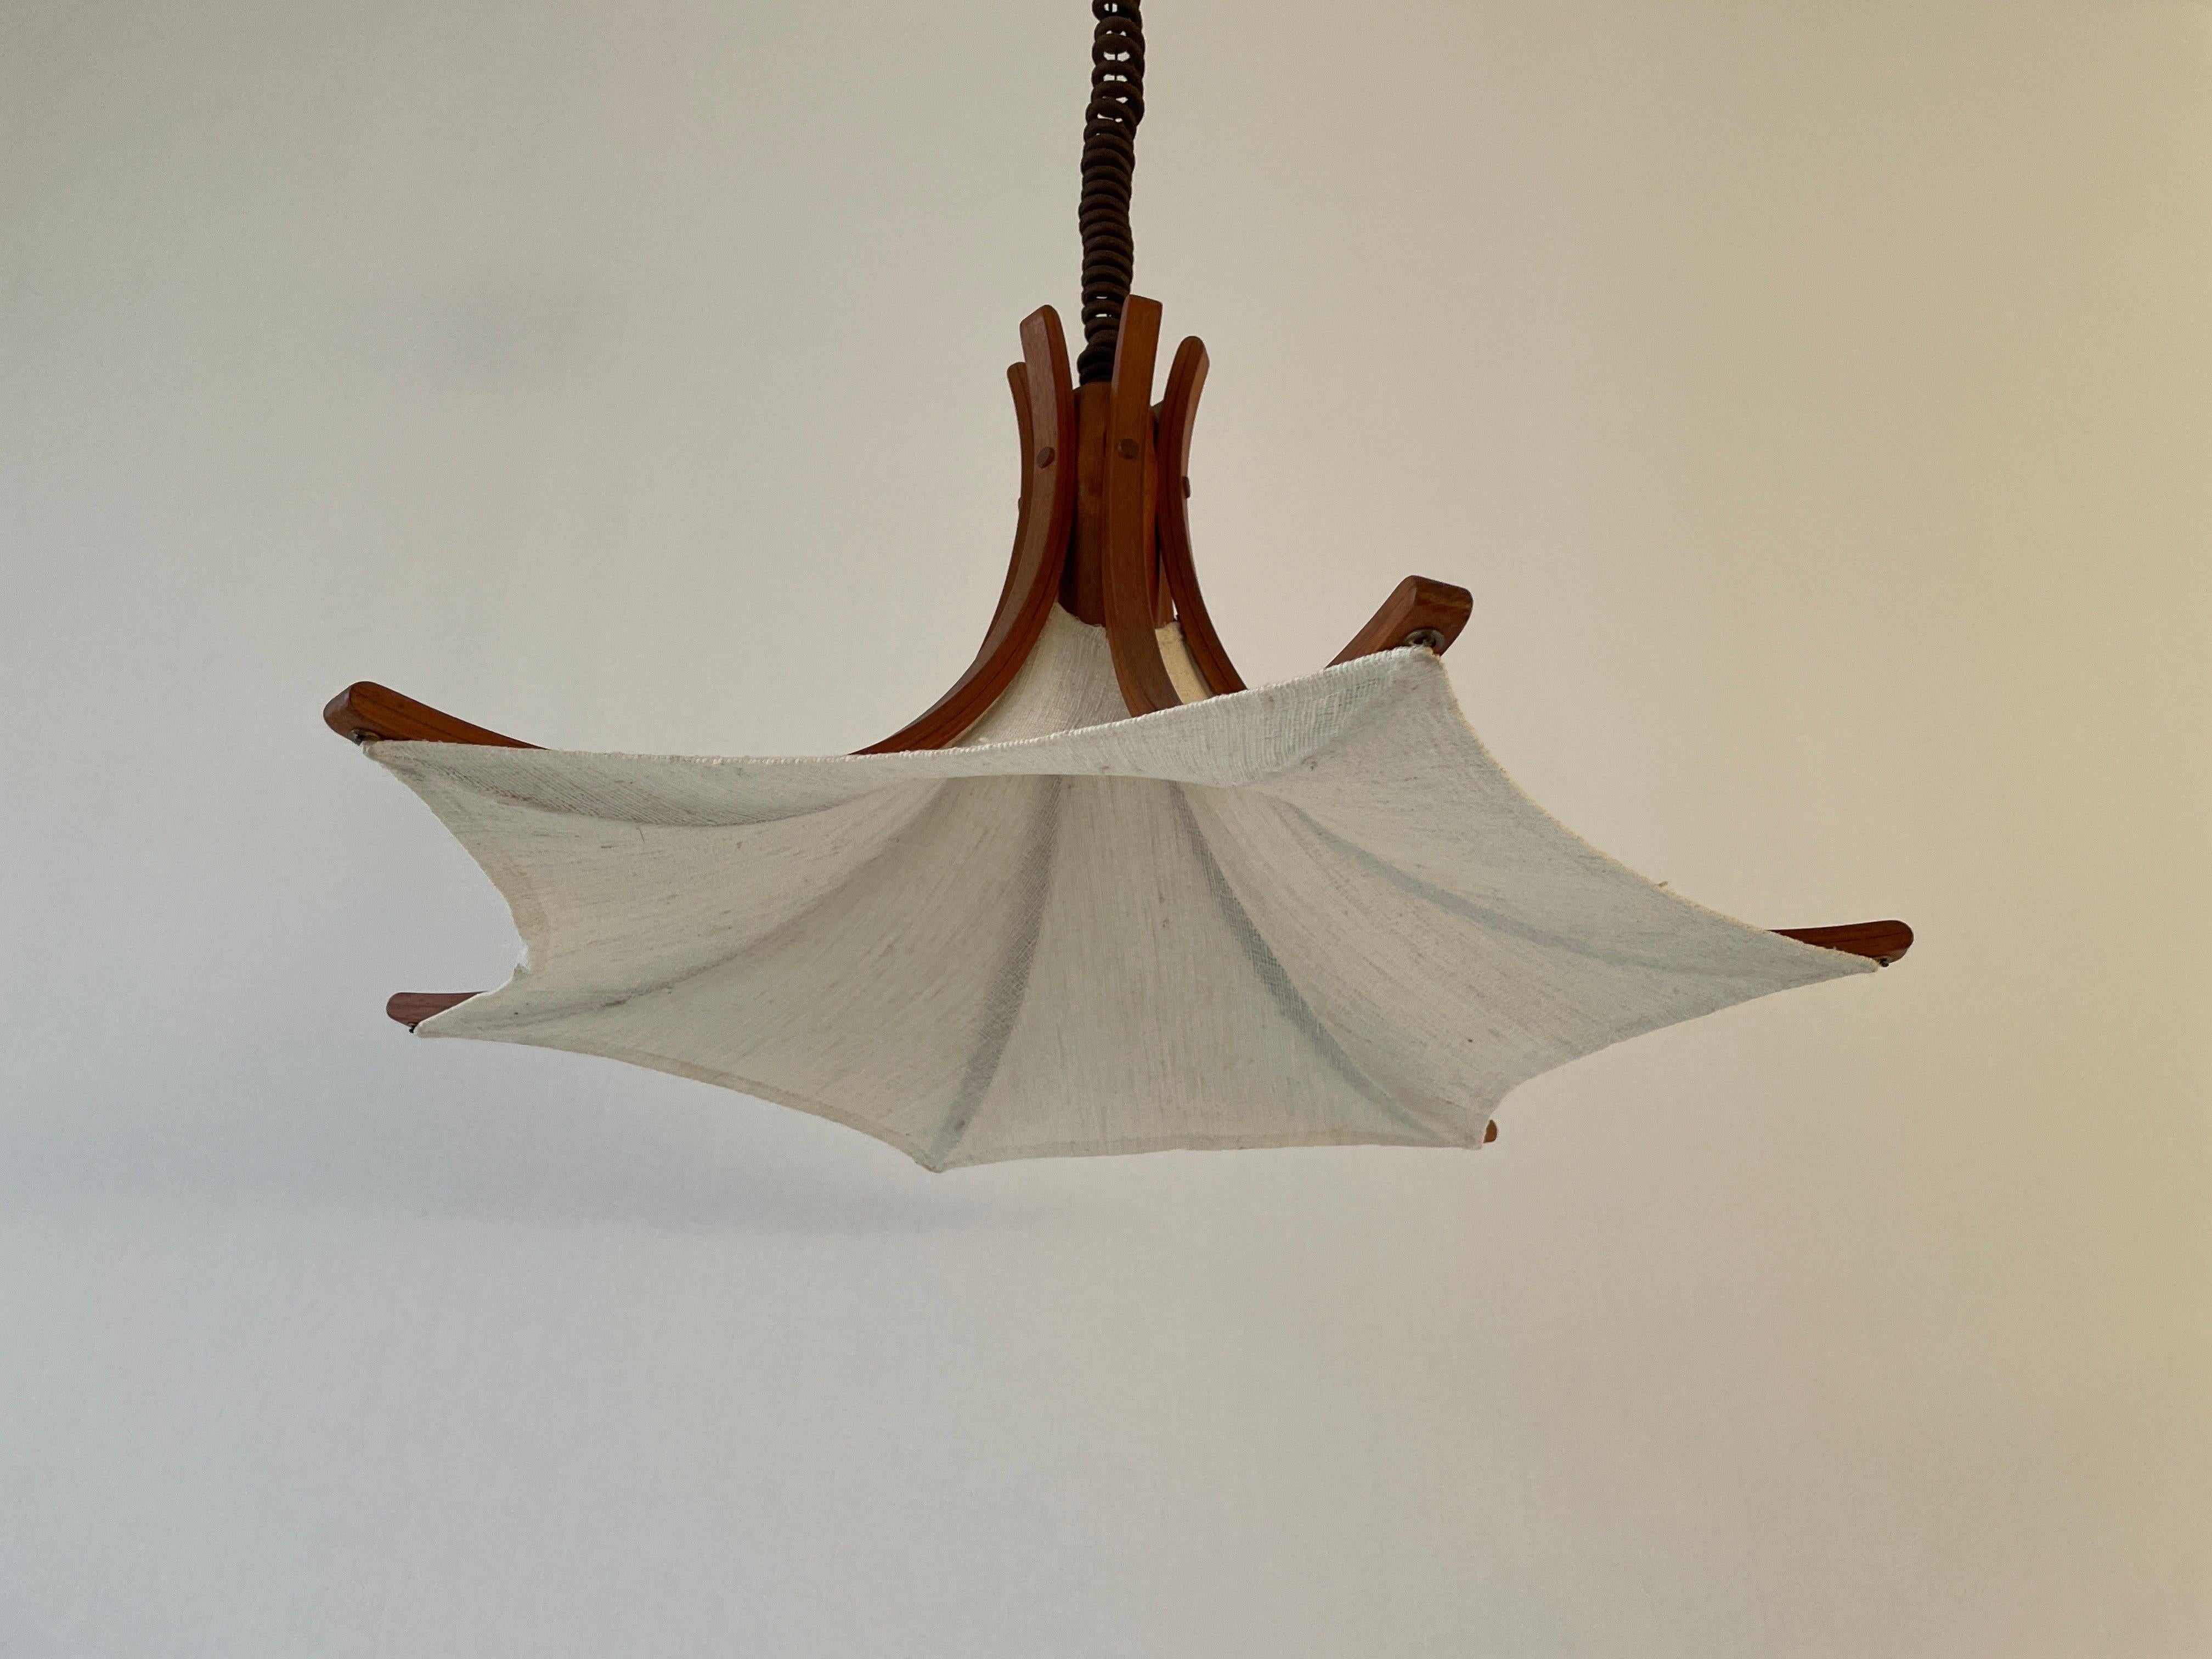 Verstellbare Hängelampe aus Leinen und Holz von Domus, 1980er Jahre, Italien

Minimalistisches und seltenes Design. 

Der Lampenschirm ist in gutem Zustand und sauber. 
Diese Lampe funktioniert mit einer E27-Glühbirne. 
Max. 100 W verkabelt und